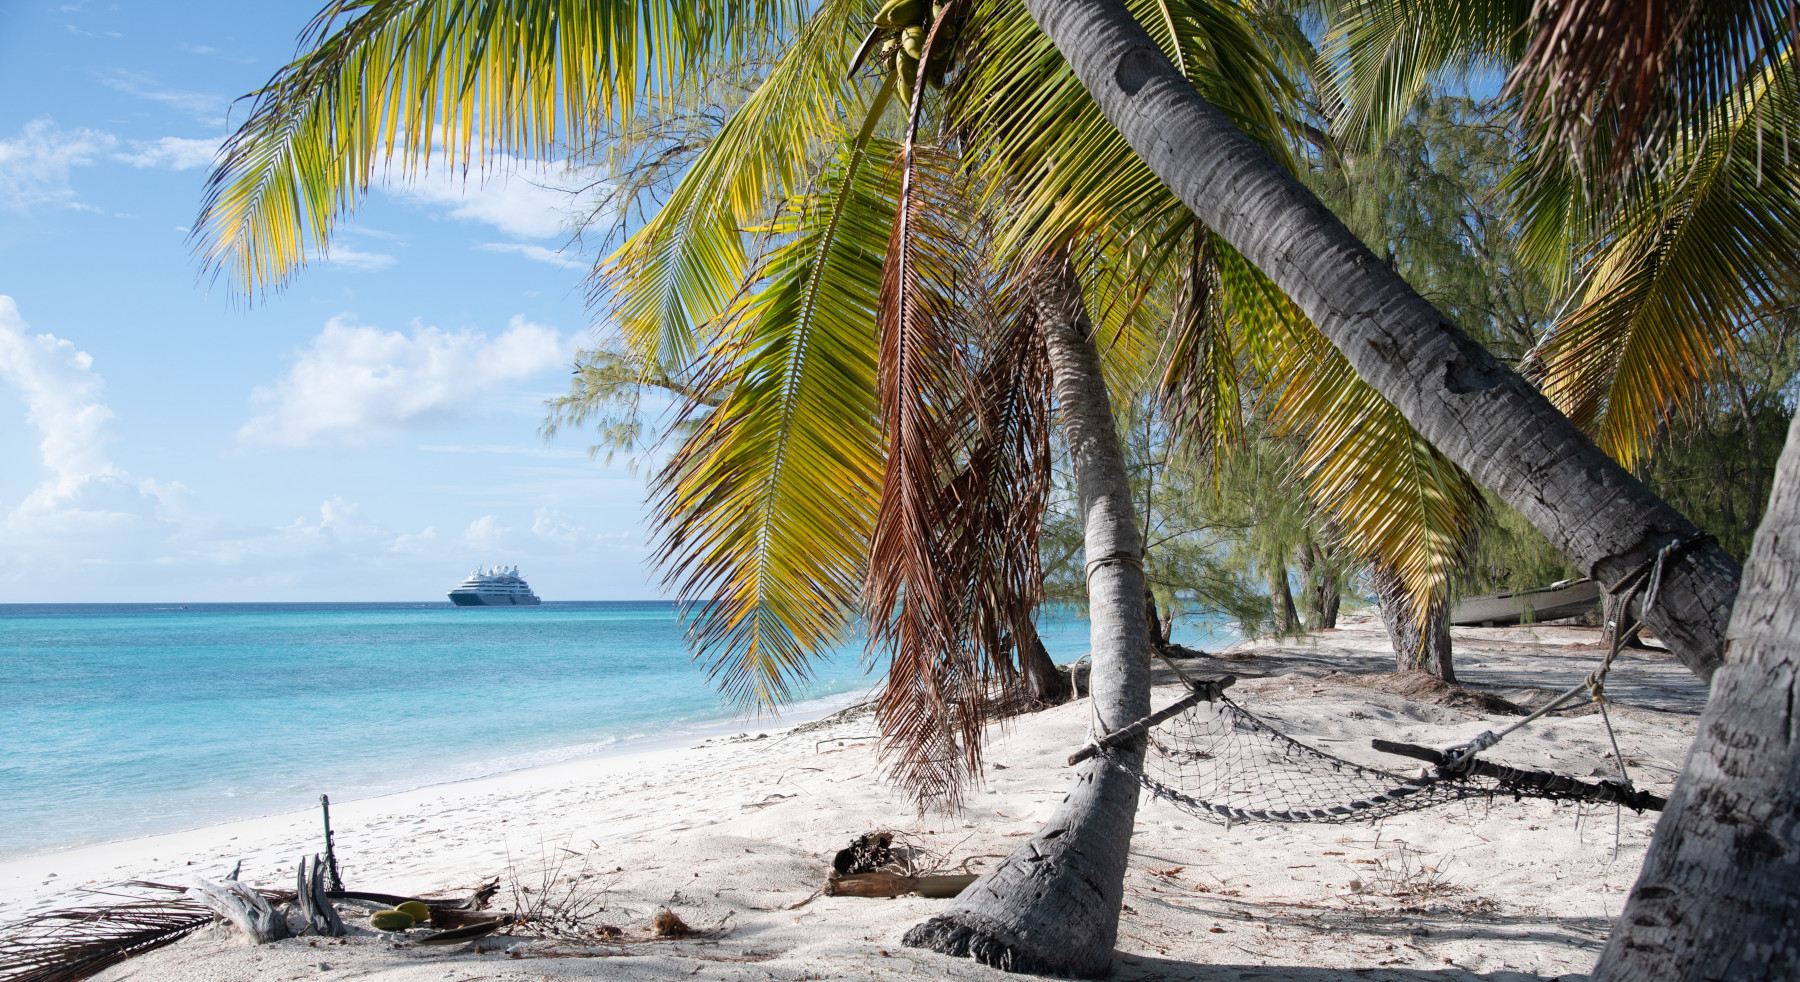 Die französische Reederei Ponant wird Hauptsponsor für das Aldabra-Projekt. Dieses Projekt hat sich ganz der Sanierung des gleichnamigen Atolls der Seychellen im Indischen Ozean verschrieben, was stark von Plastikverschmutzung